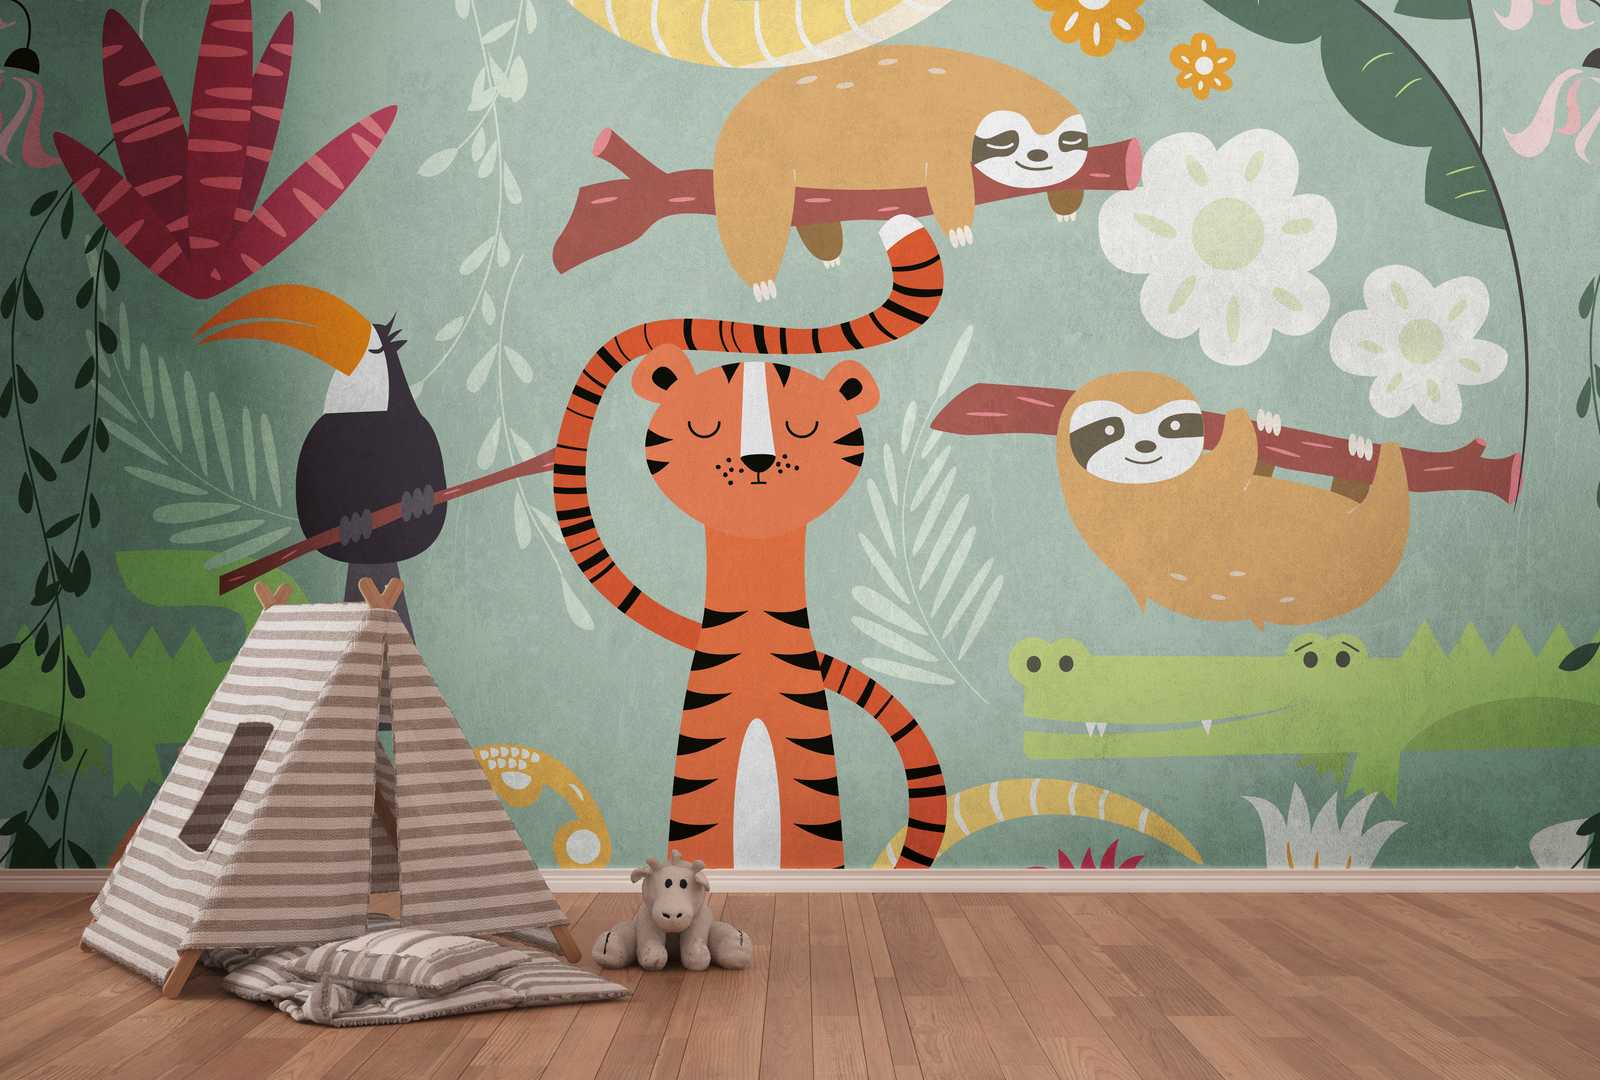             Papel pintado novedad - papel pintado con motivo de niños animales de la selva estilo cómic
        